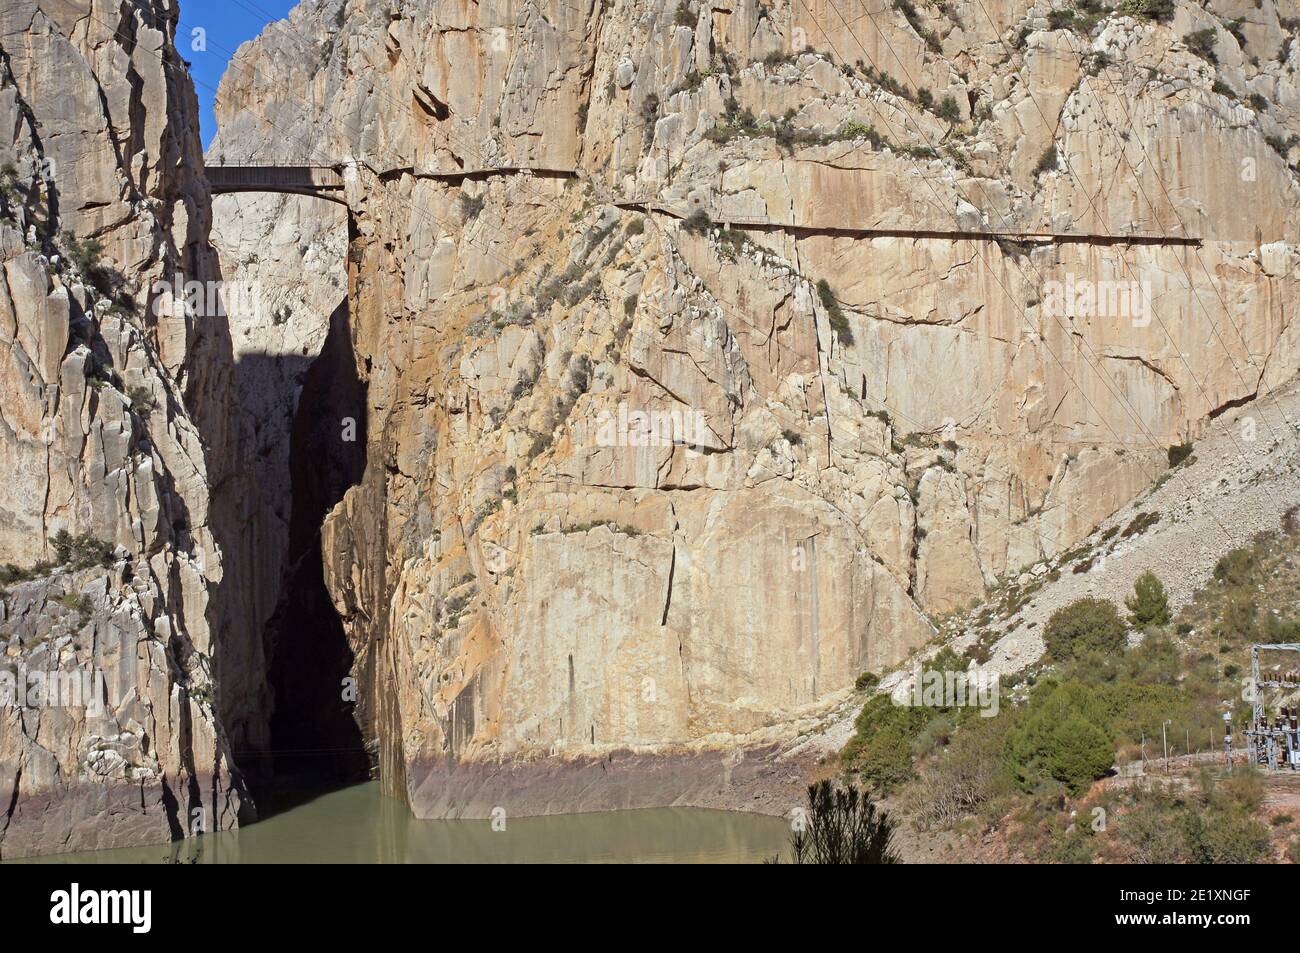 Spanien: Die Embalse de Gaitenejo und die Schlucht Garganta del Chorro. Hoch oben auf den Klippen befindet sich der Caminito del Rey, ein Gehweg, der für die Wasserkraft geschaffen wurde Stockfoto